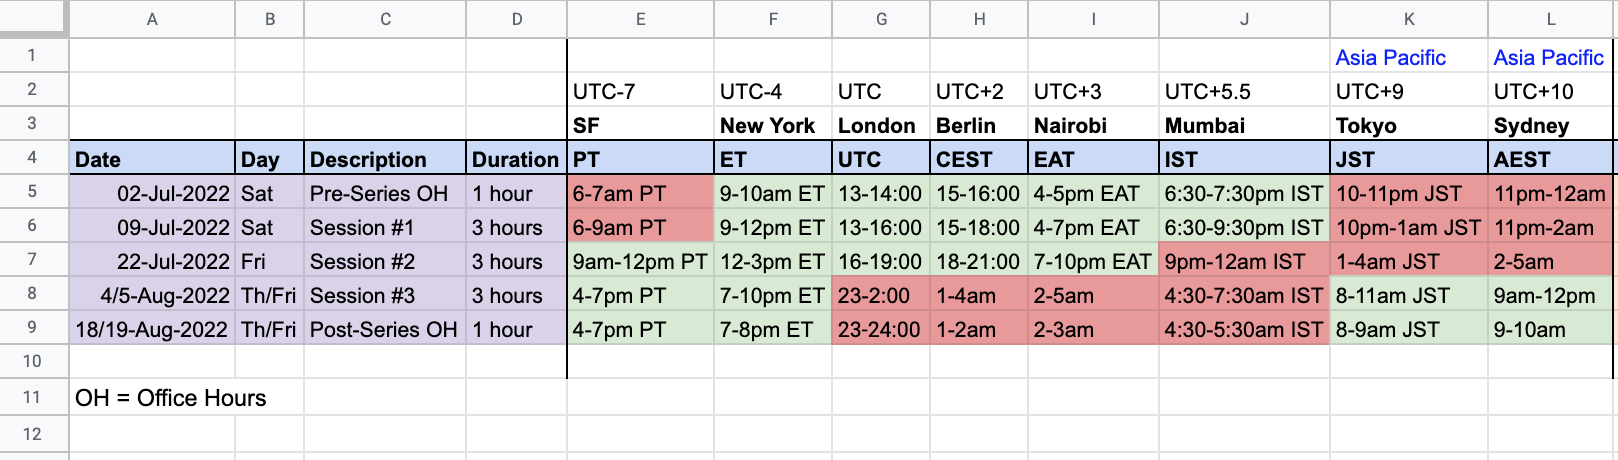 schedule with timezones